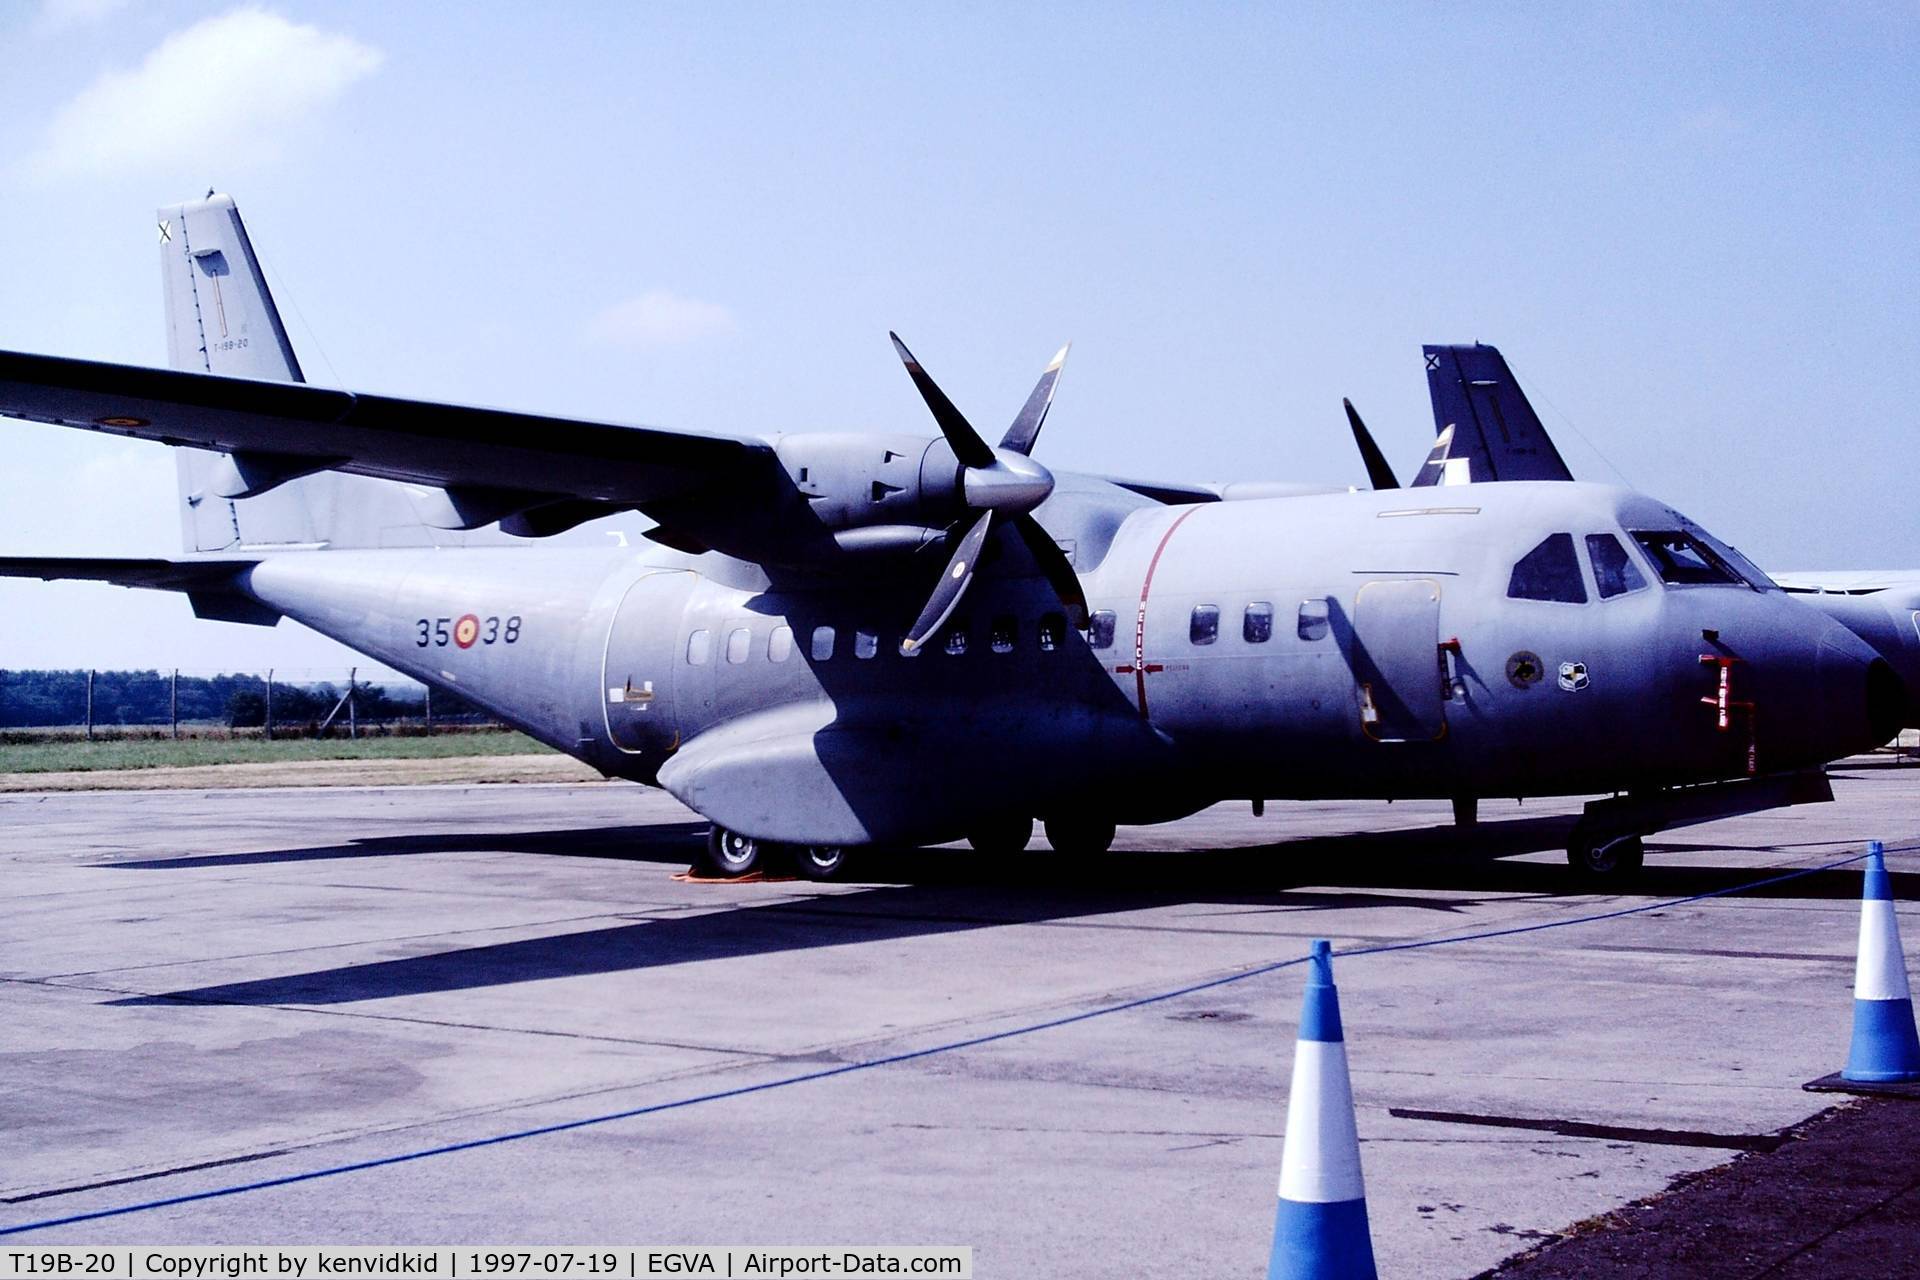 T19B-20, 1993 Airtech CN-235M-100 C/N C079, At the 1997 Royal International Air Tattoo.